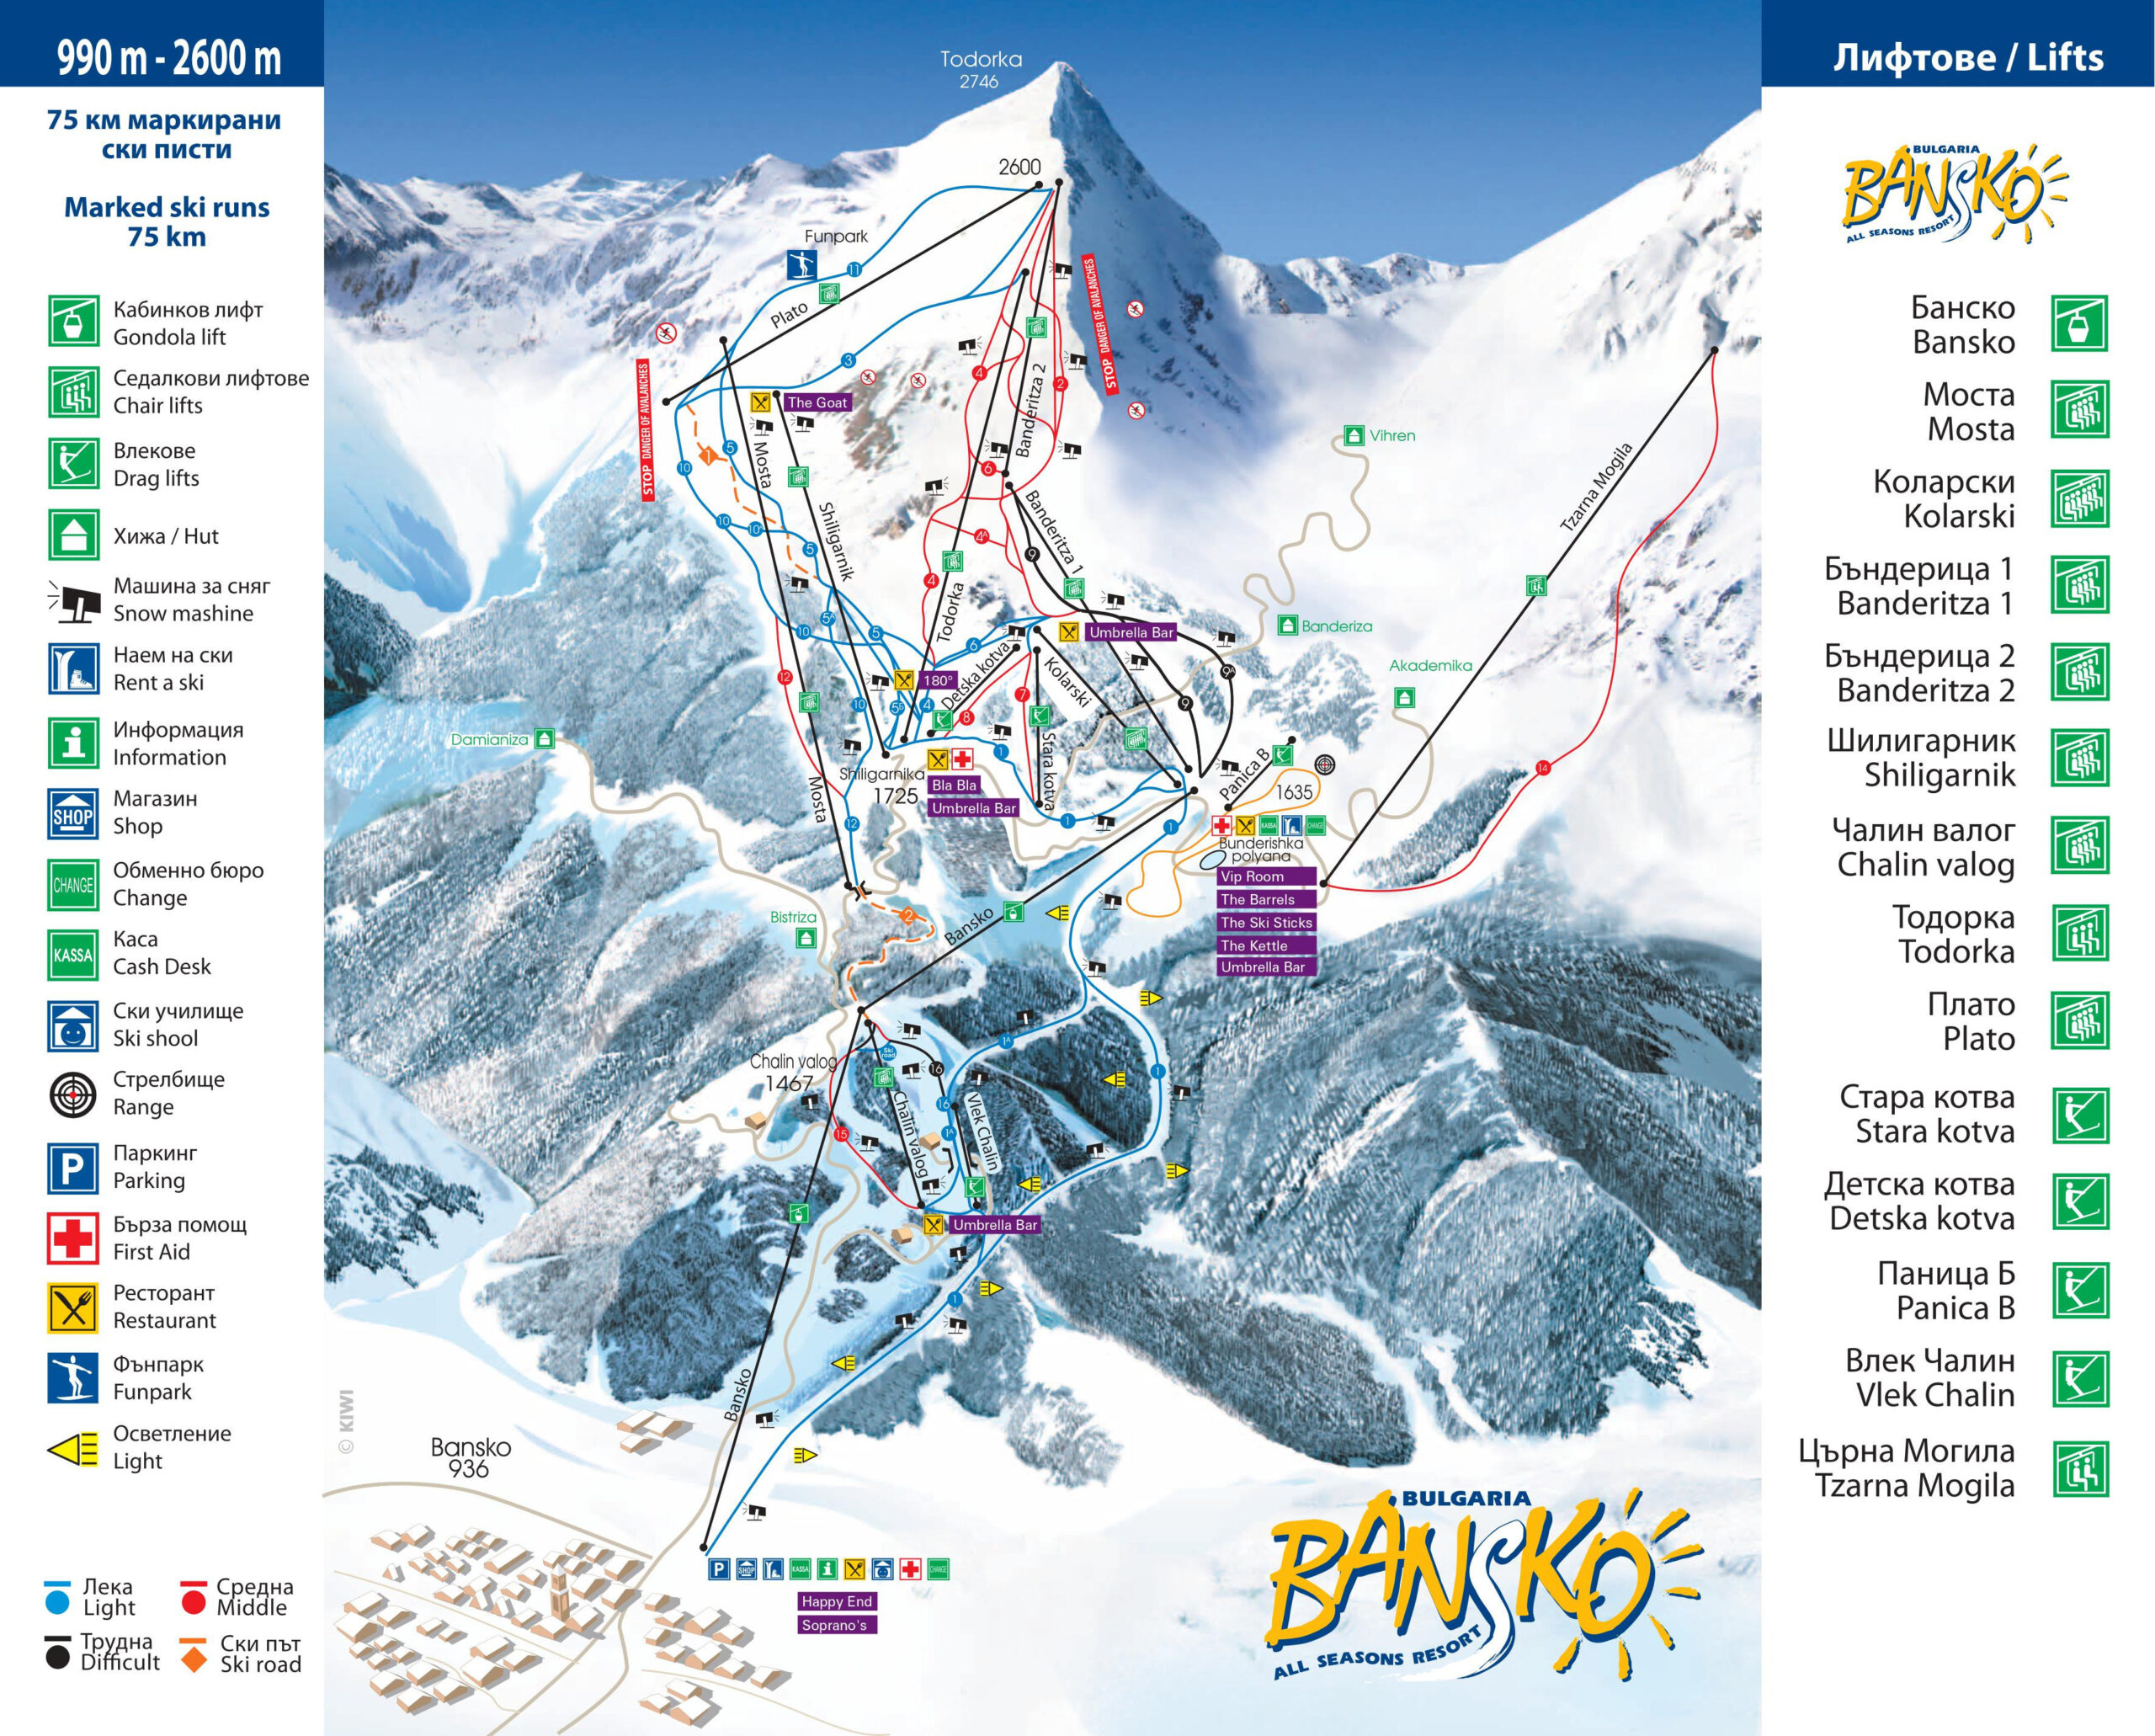 Pentru pasionați: Cât va dura sezonul de schi din celebra stațiune montană bulgară Bansko